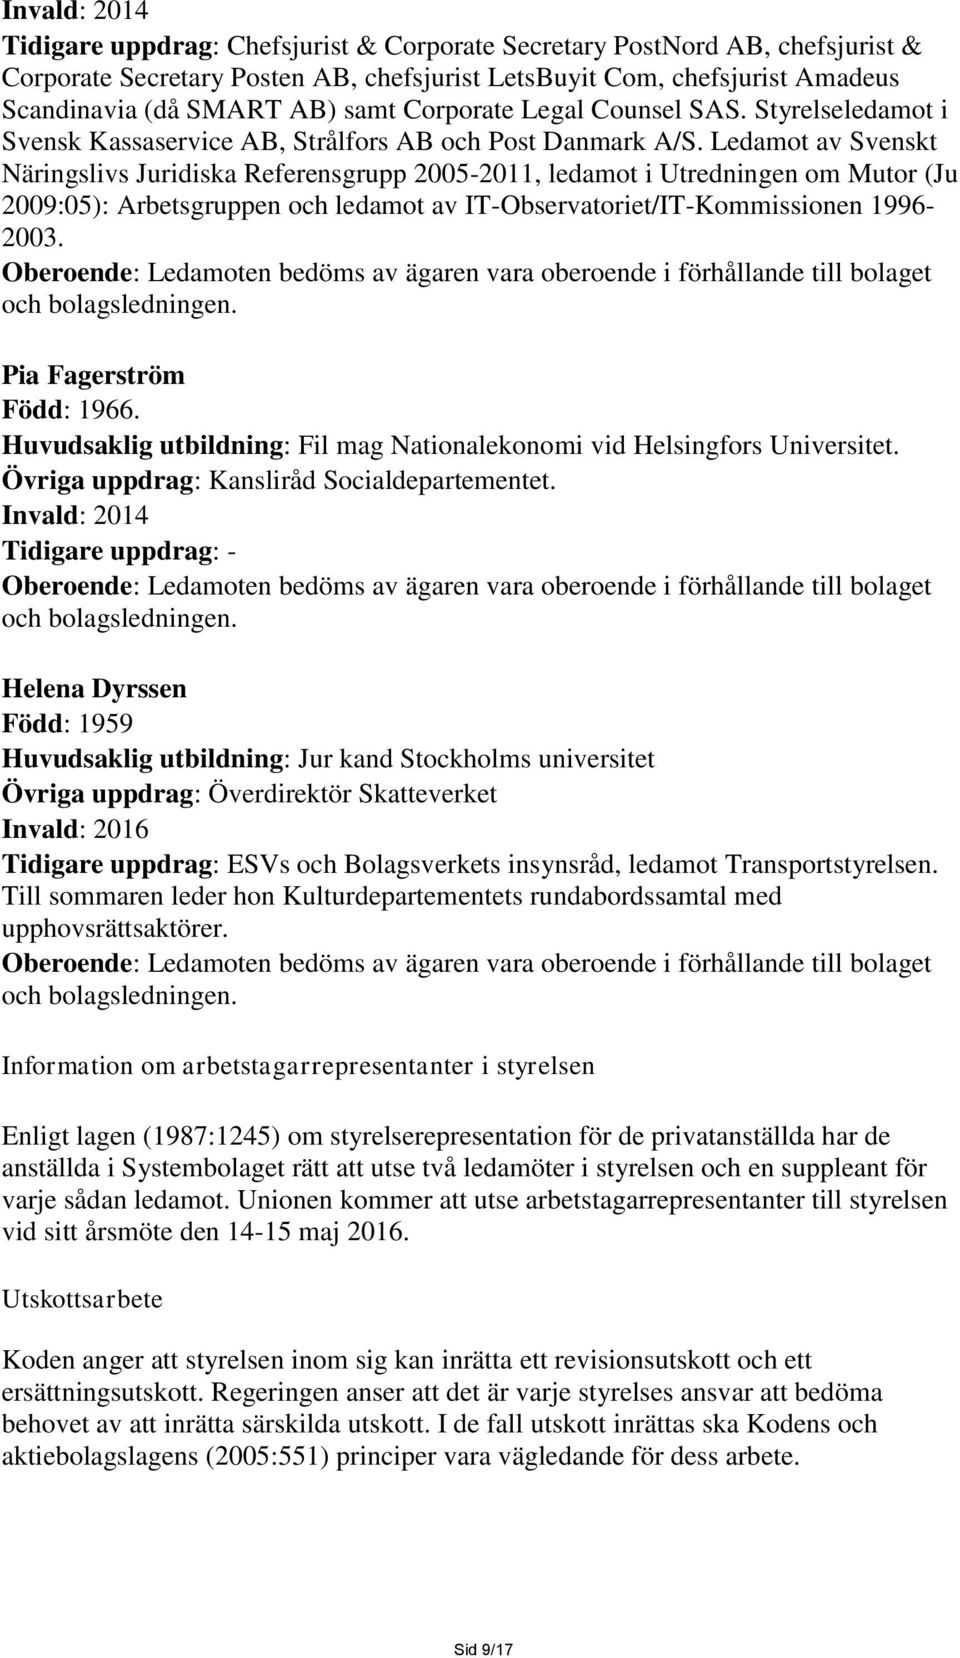 Ledamot av Svenskt Näringslivs Juridiska Referensgrupp 2005-2011, ledamot i Utredningen om Mutor (Ju 2009:05): Arbetsgruppen och ledamot av IT-Observatoriet/IT-Kommissionen 1996-2003.